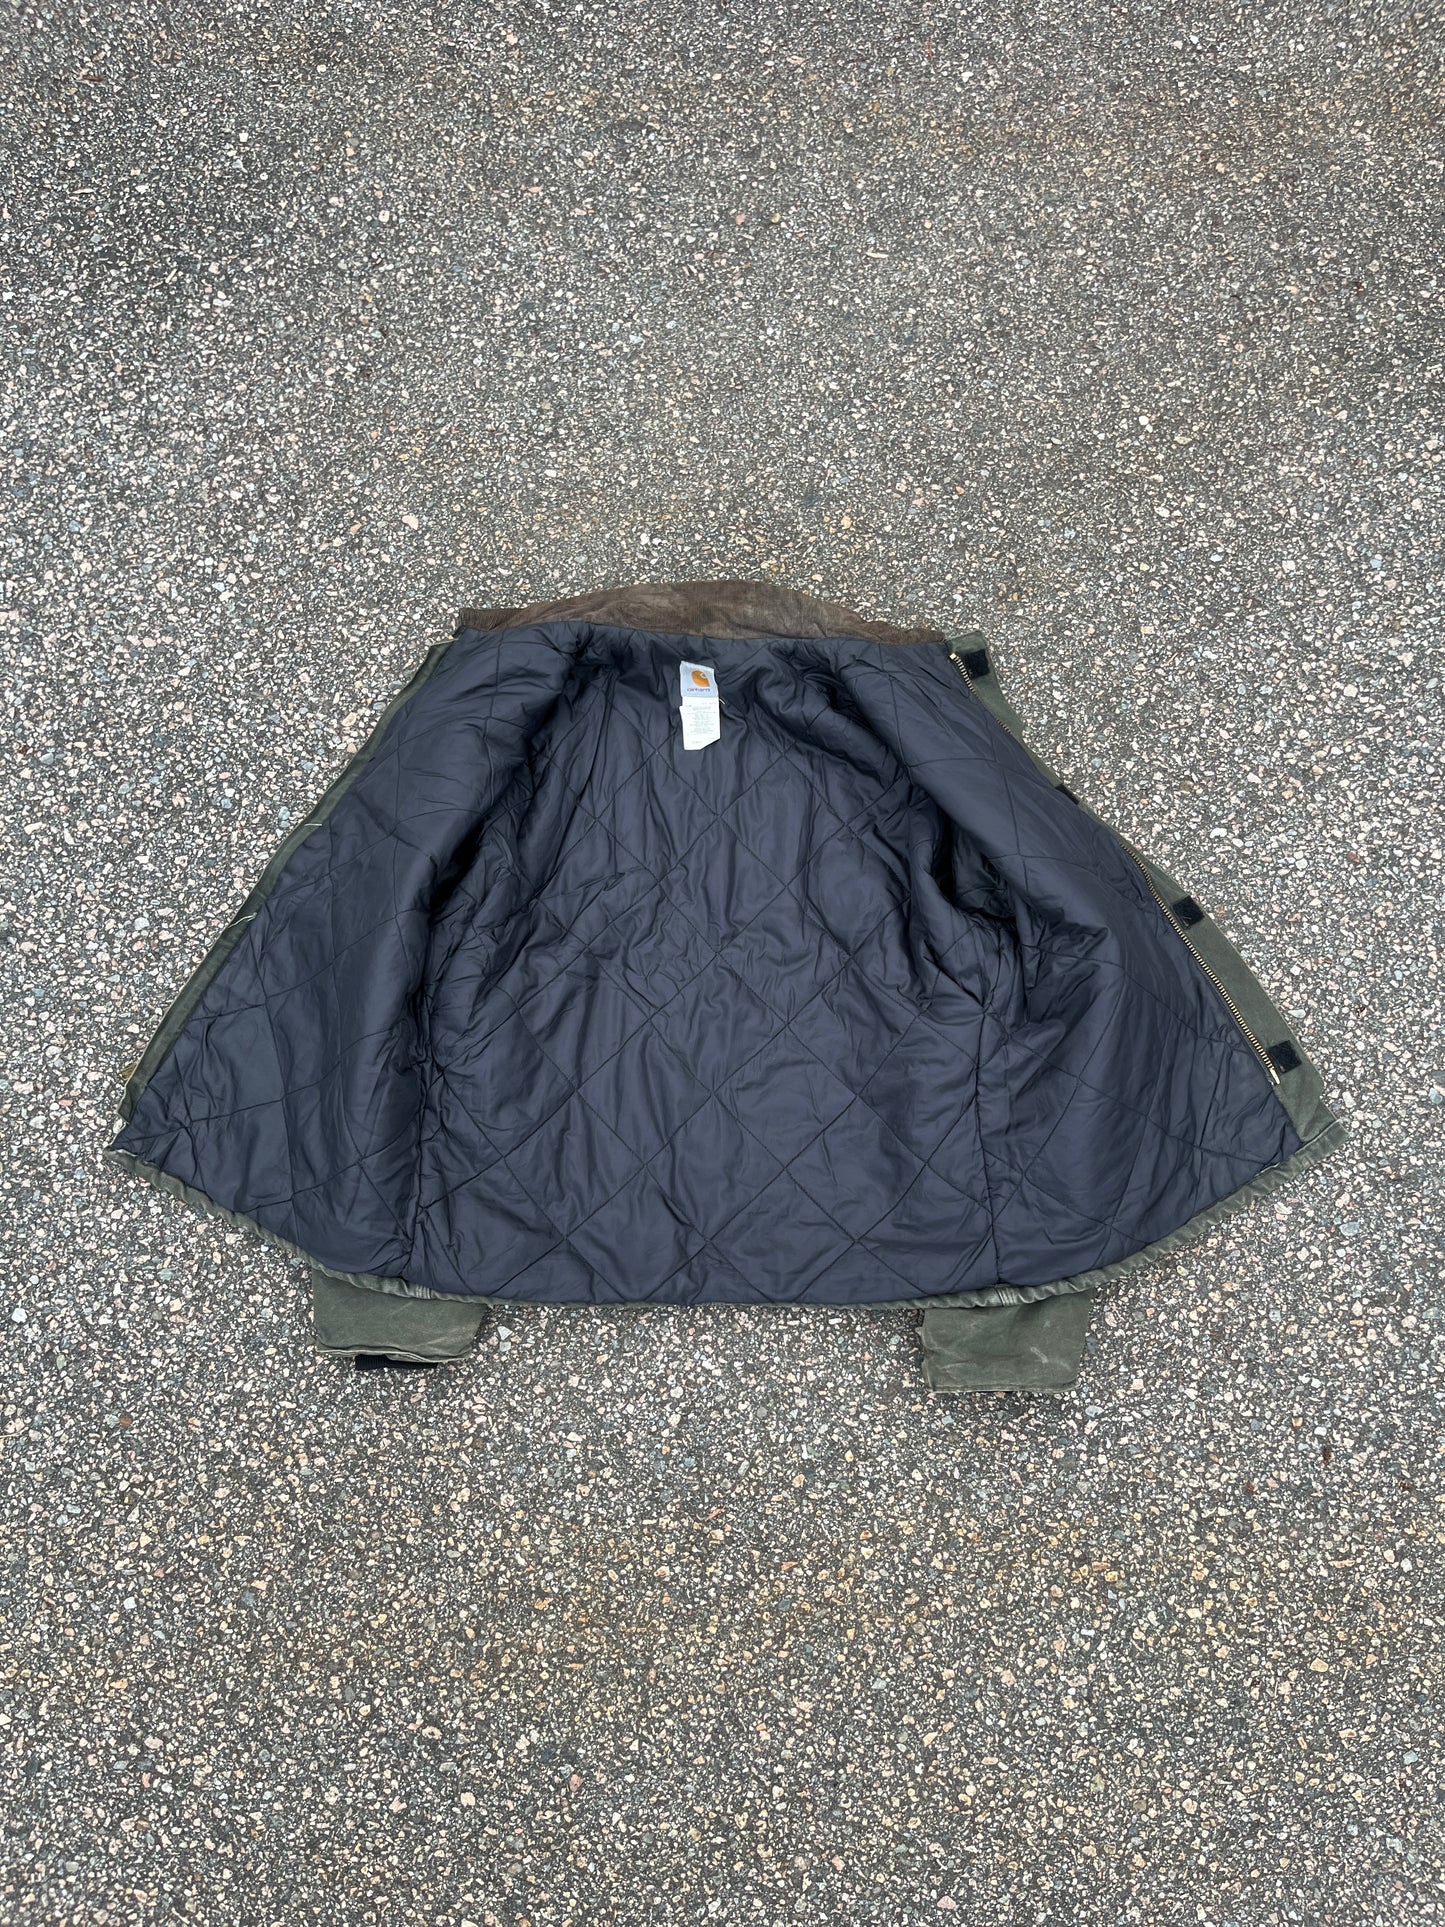 Faded Olive Green Carhartt Arctic Jacket - XL Tall